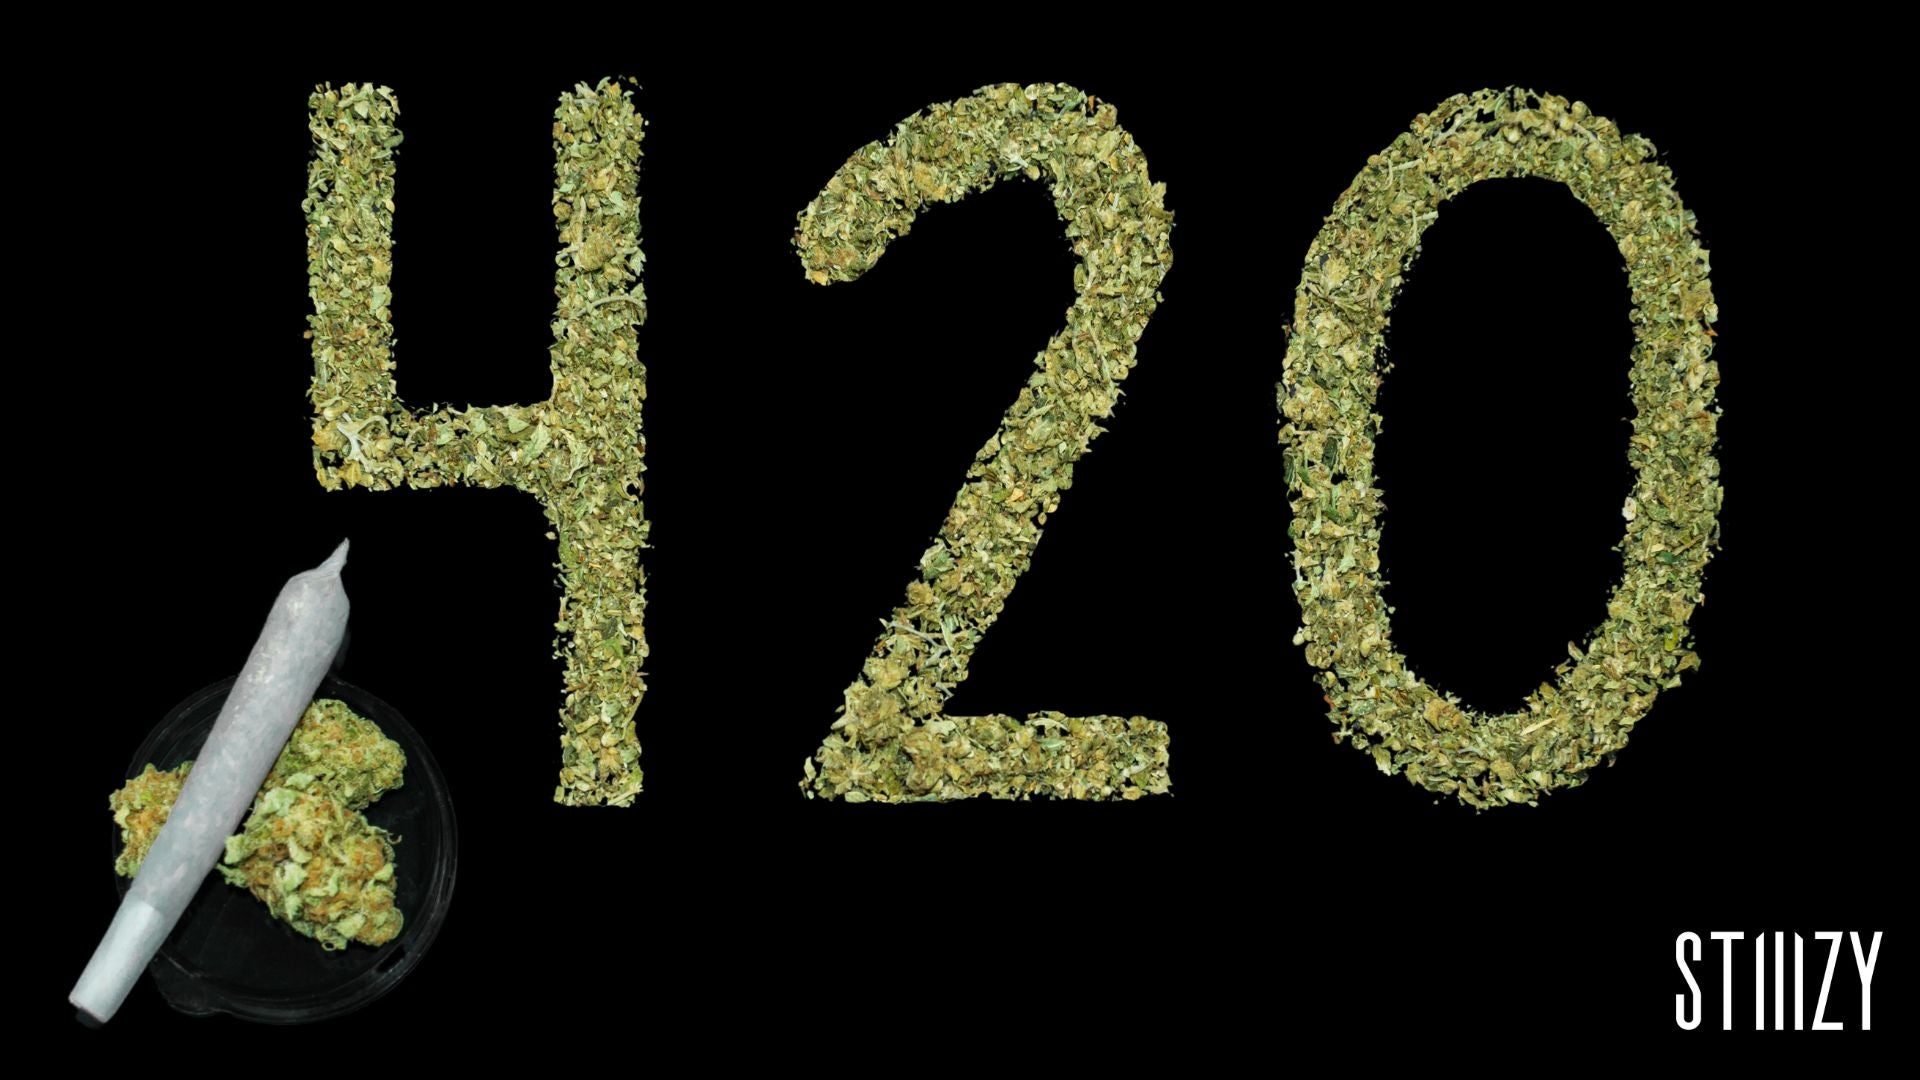 420 slang for the time stoners meet to smoke